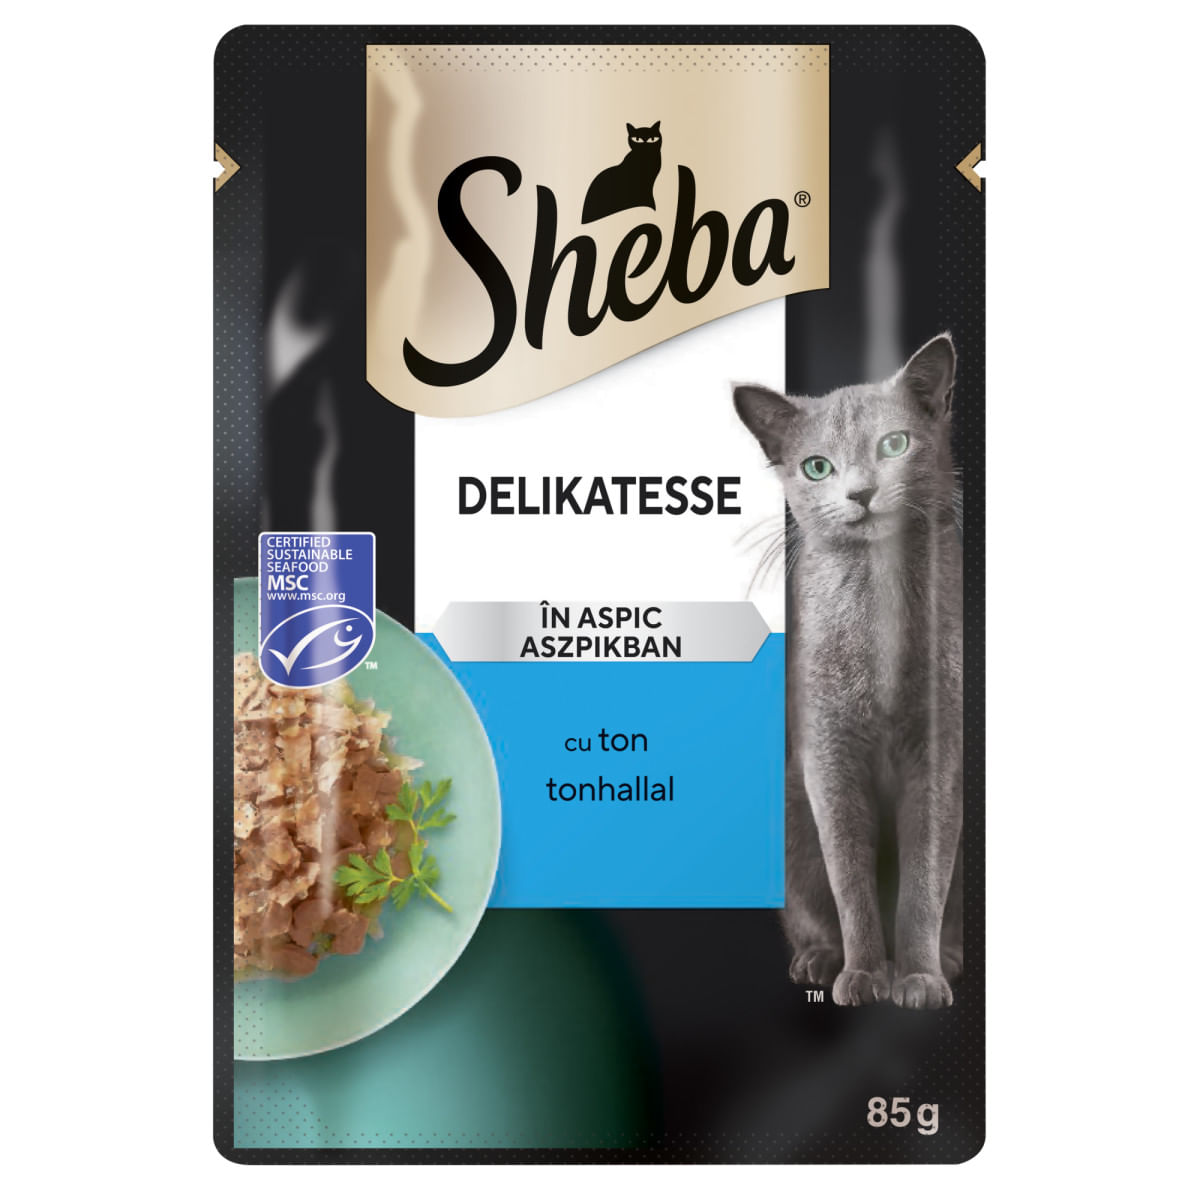 SHEBA Delicatese, Ton, plic hrană umedă pisici, (în aspic), bax, 85g x 28buc